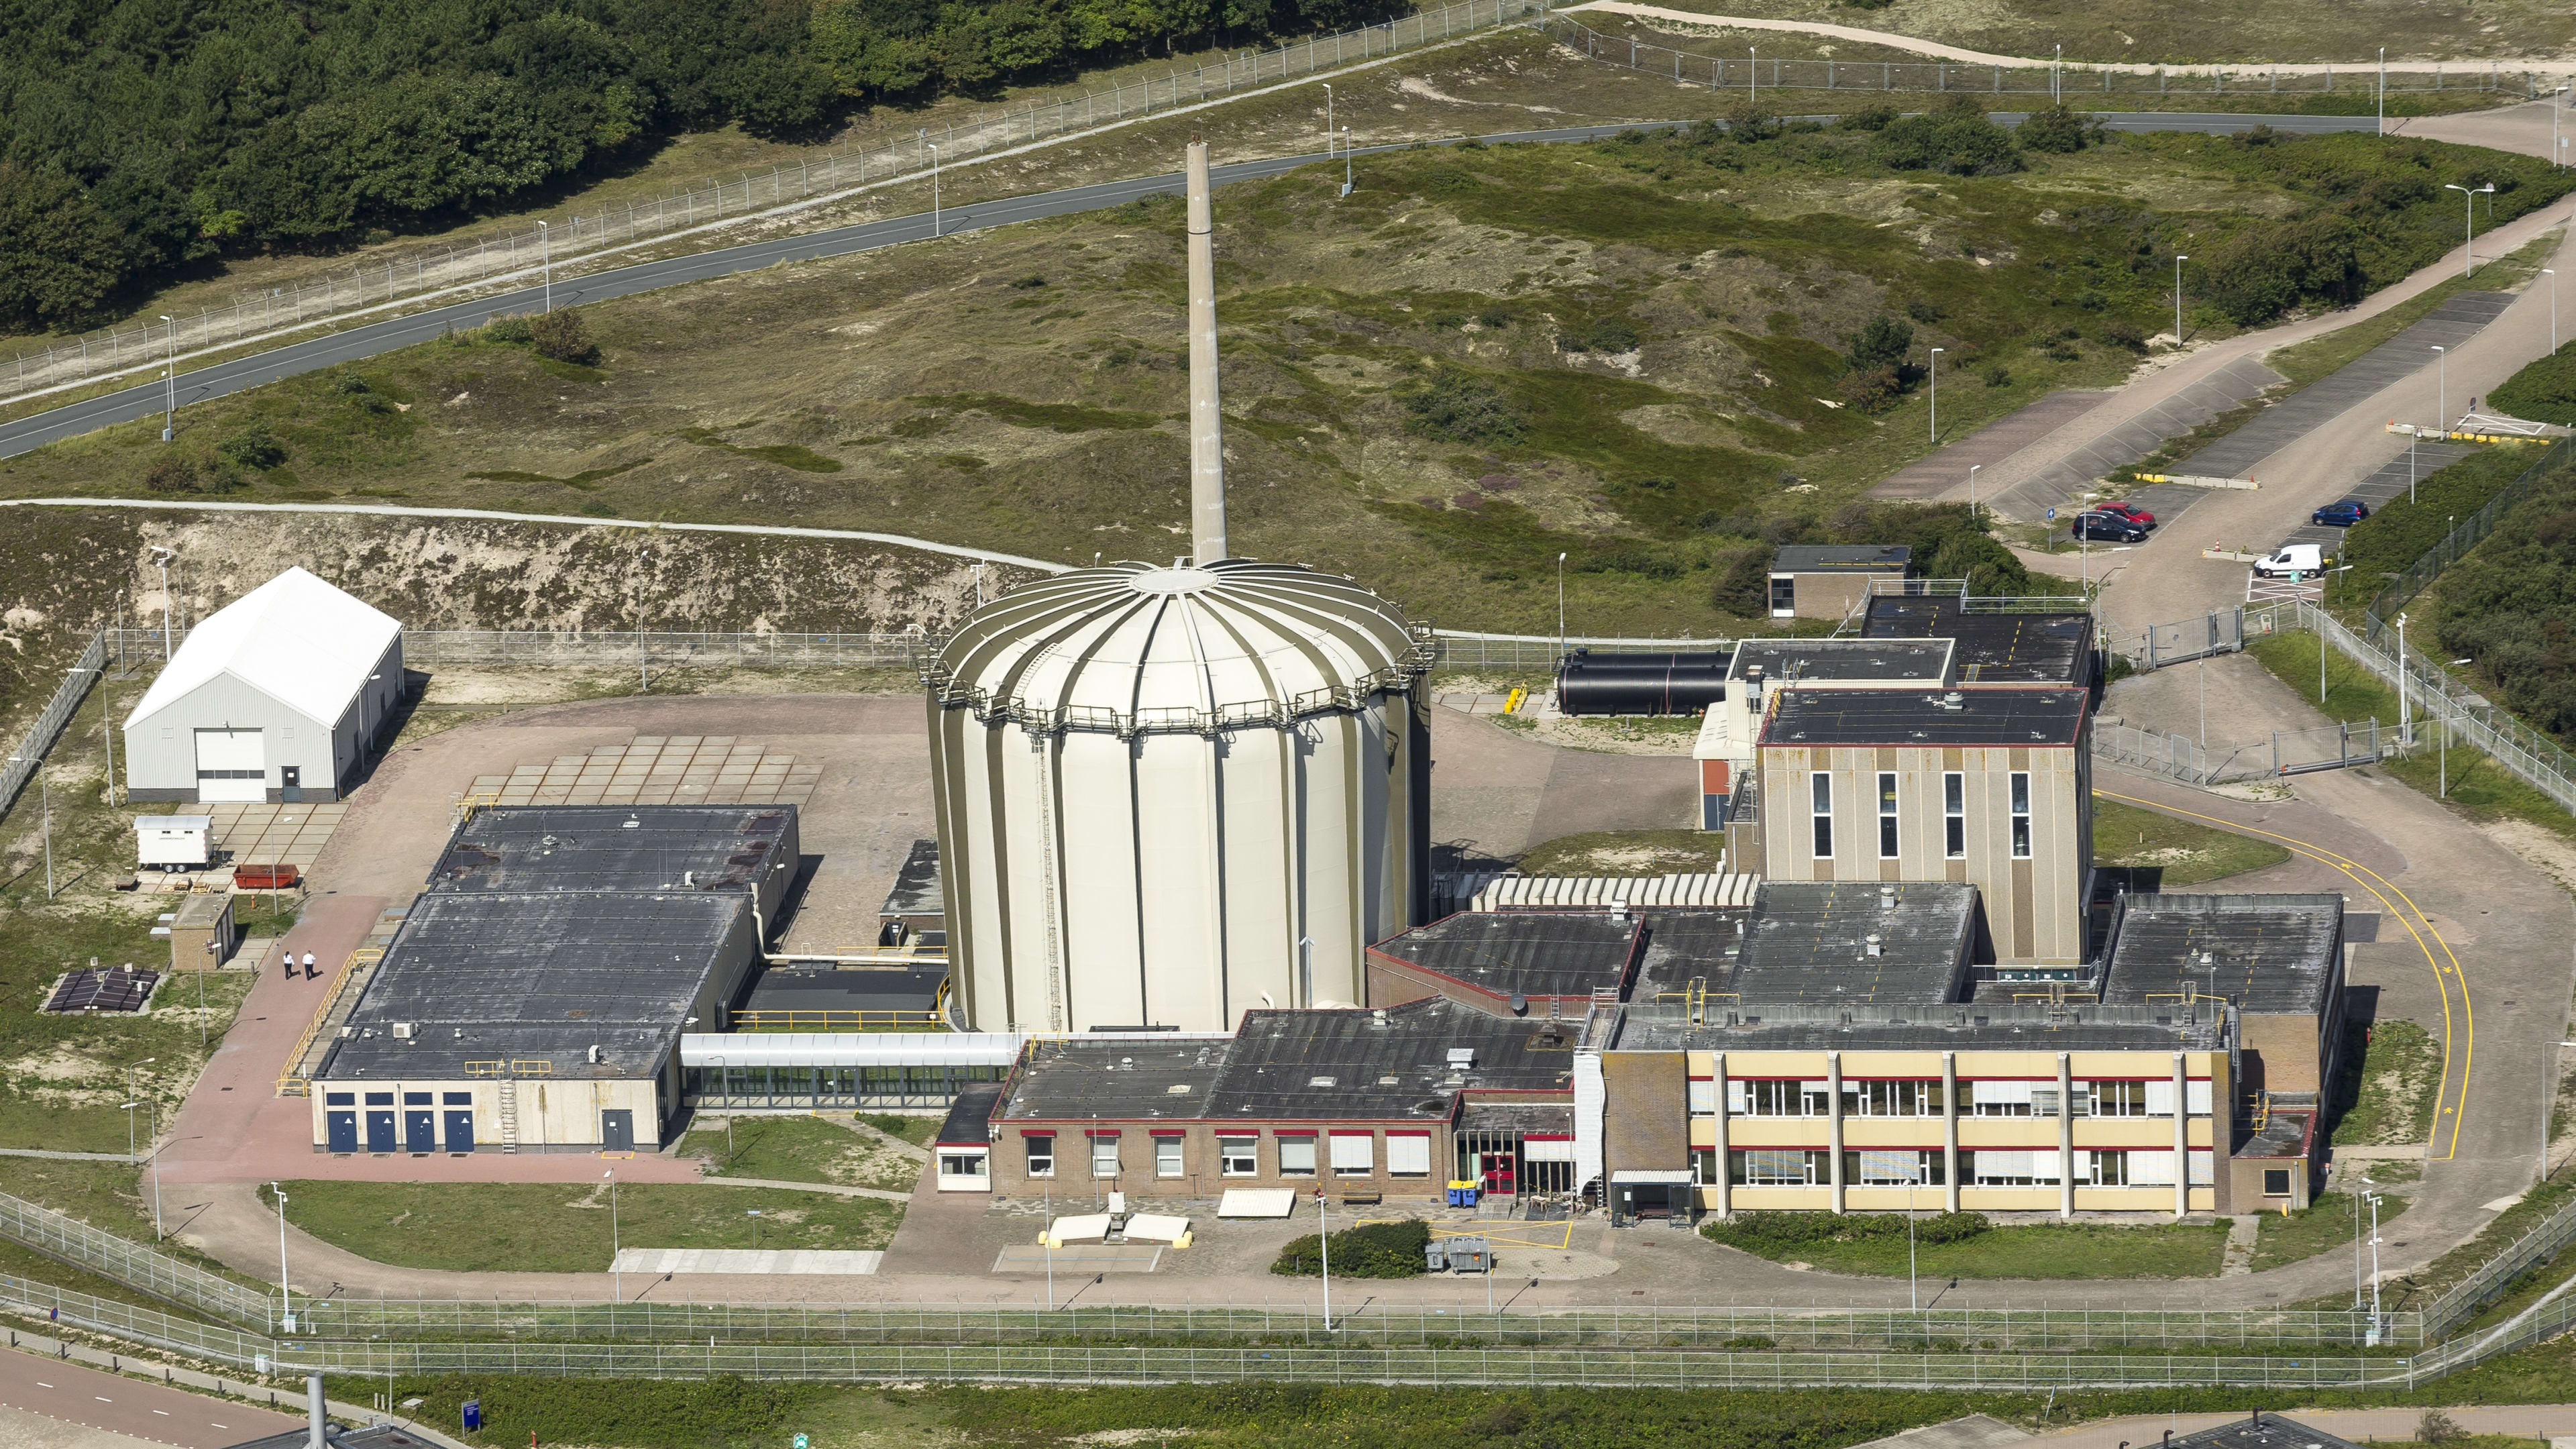 Productie kernreactor bij Petten stilgelegd, rook uit gebouw